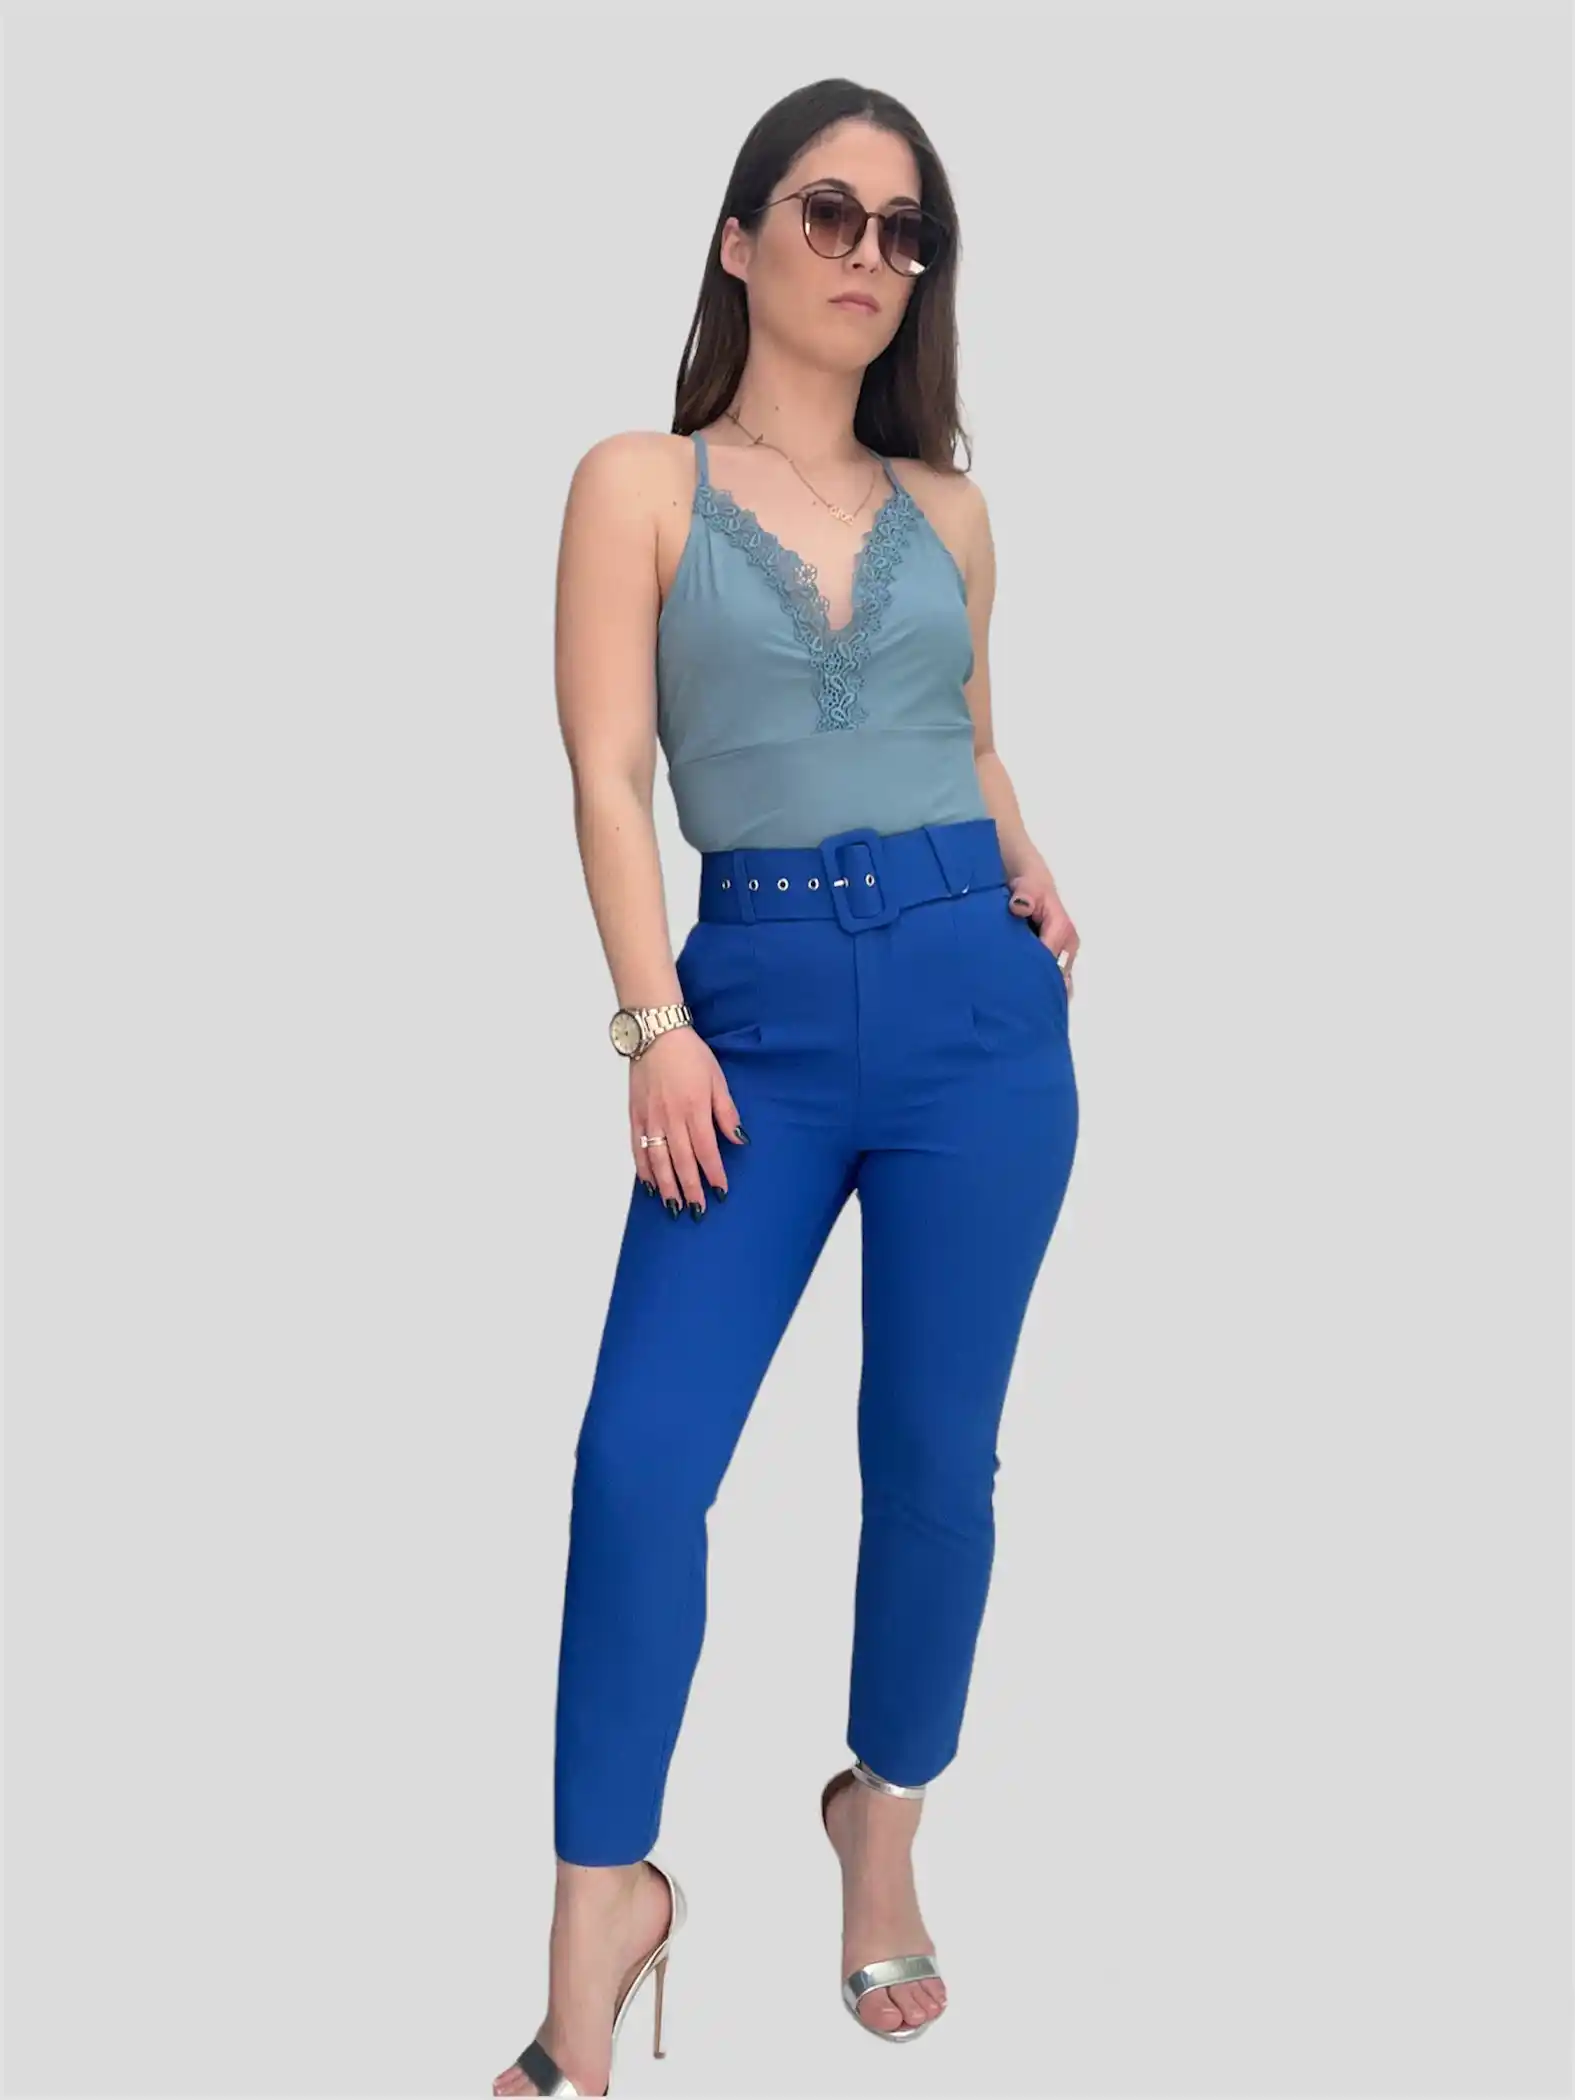 Γυναικείο παντελόνι με ζώνη μπλε ηλεκτρικ